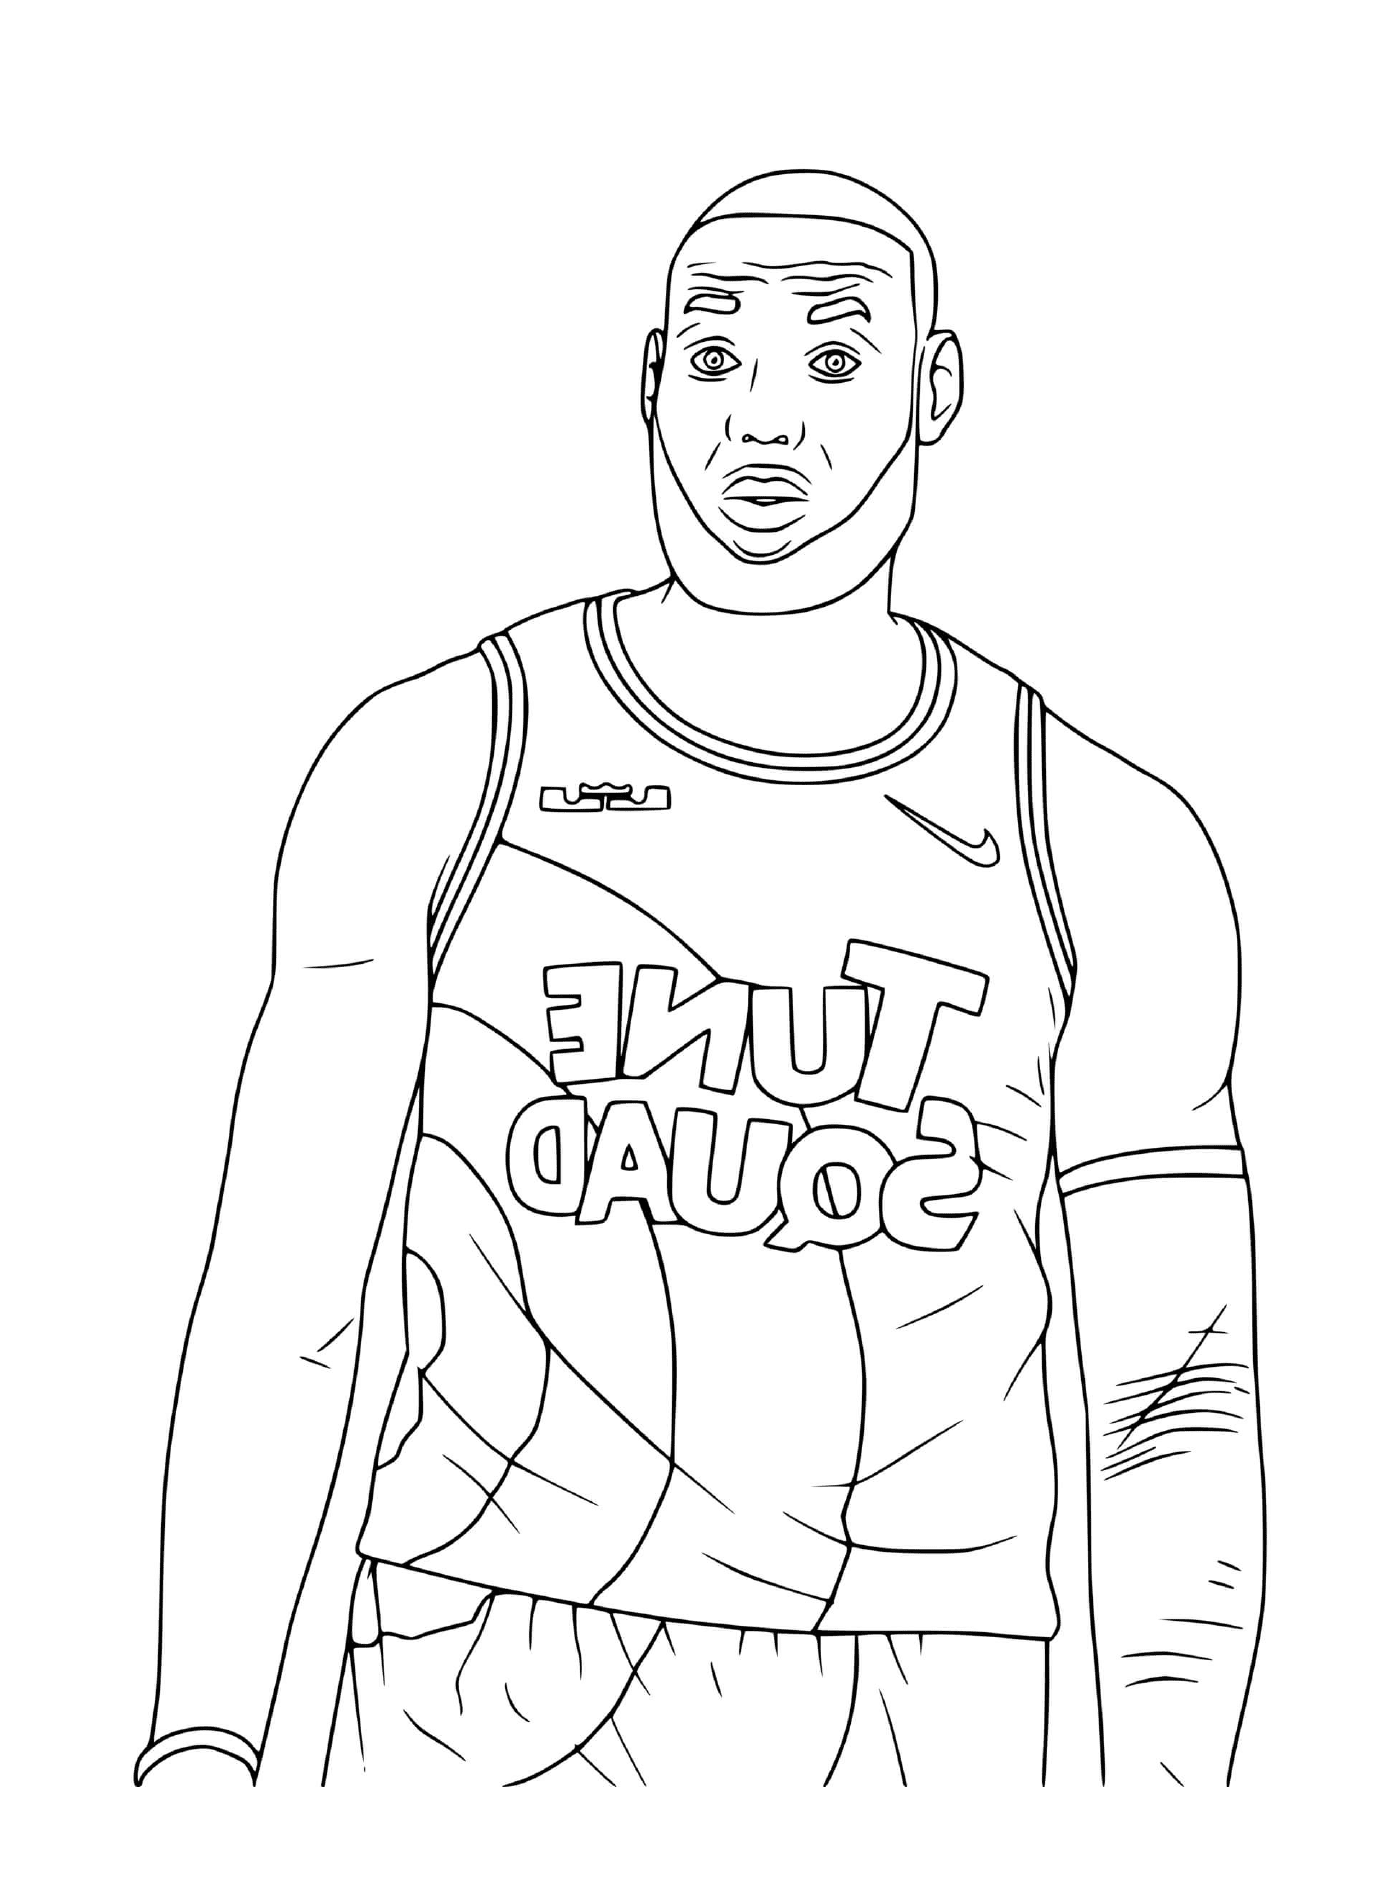  Basketball player LeBron James 